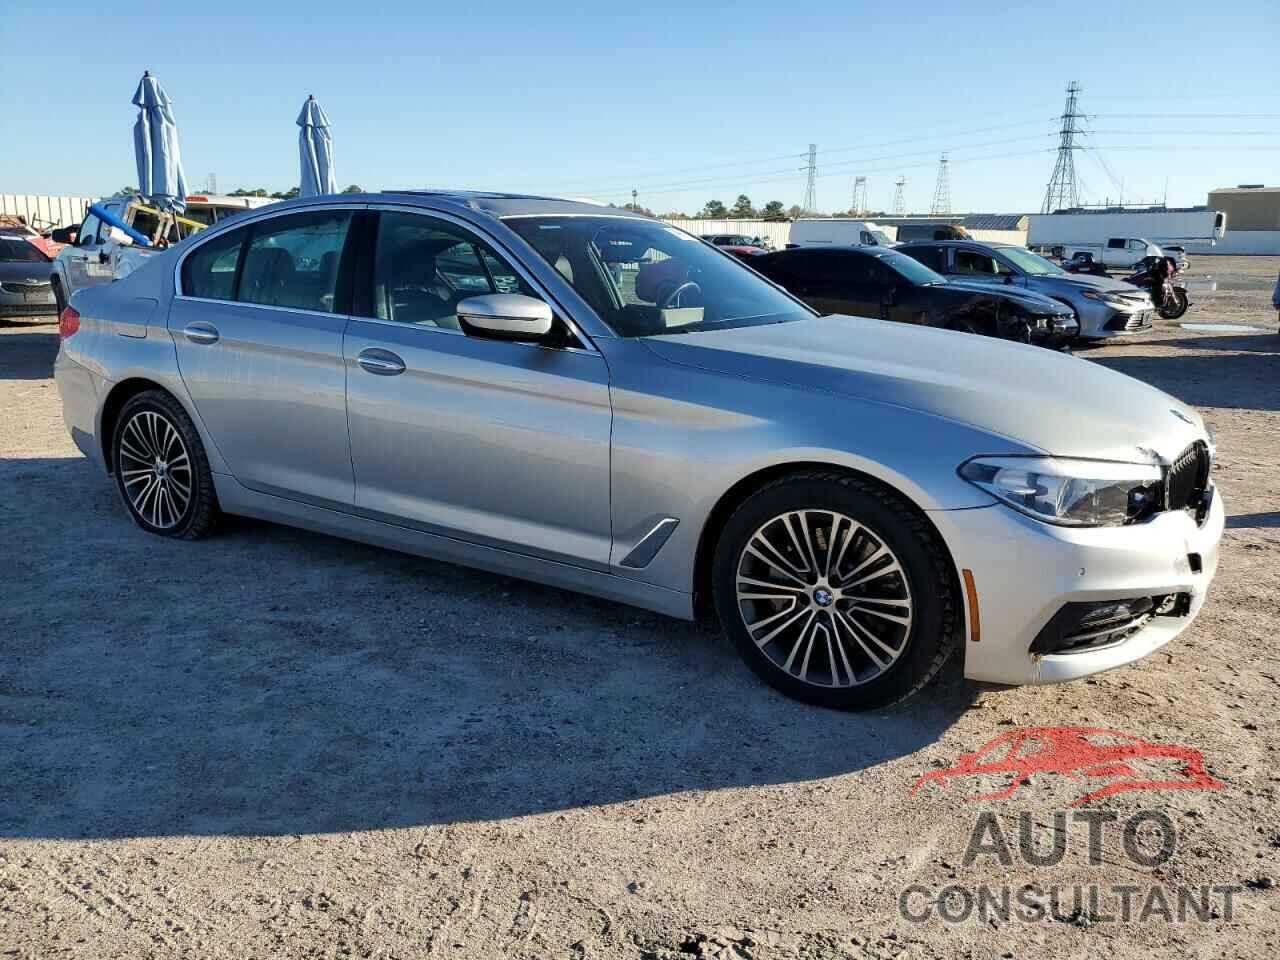 BMW 5 SERIES 2018 - WBAJA7C51JWA74110